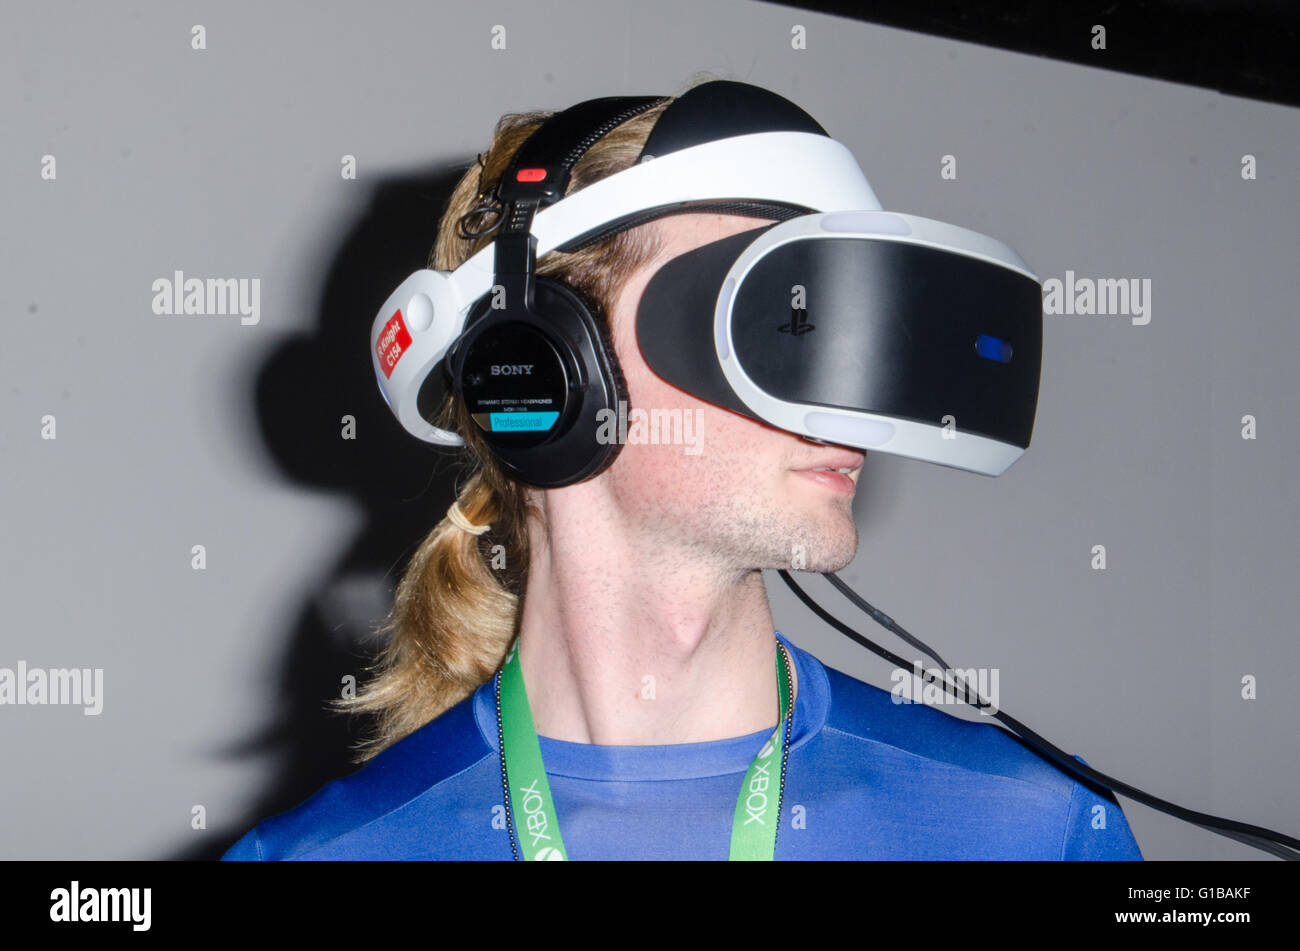 Sydney, Australie - 4 octobre 2015 : Sony a fourni un casque de réalité virtuelle pour la démonstration Playstation (PS4) au cours de l'EB 2015 Expo au Parc olympique de Sydney. Cette expérience virtuelle a également présenté de nouveaux jeux qui seront disponibles une fois que le VR est publié officiellement. Banque D'Images